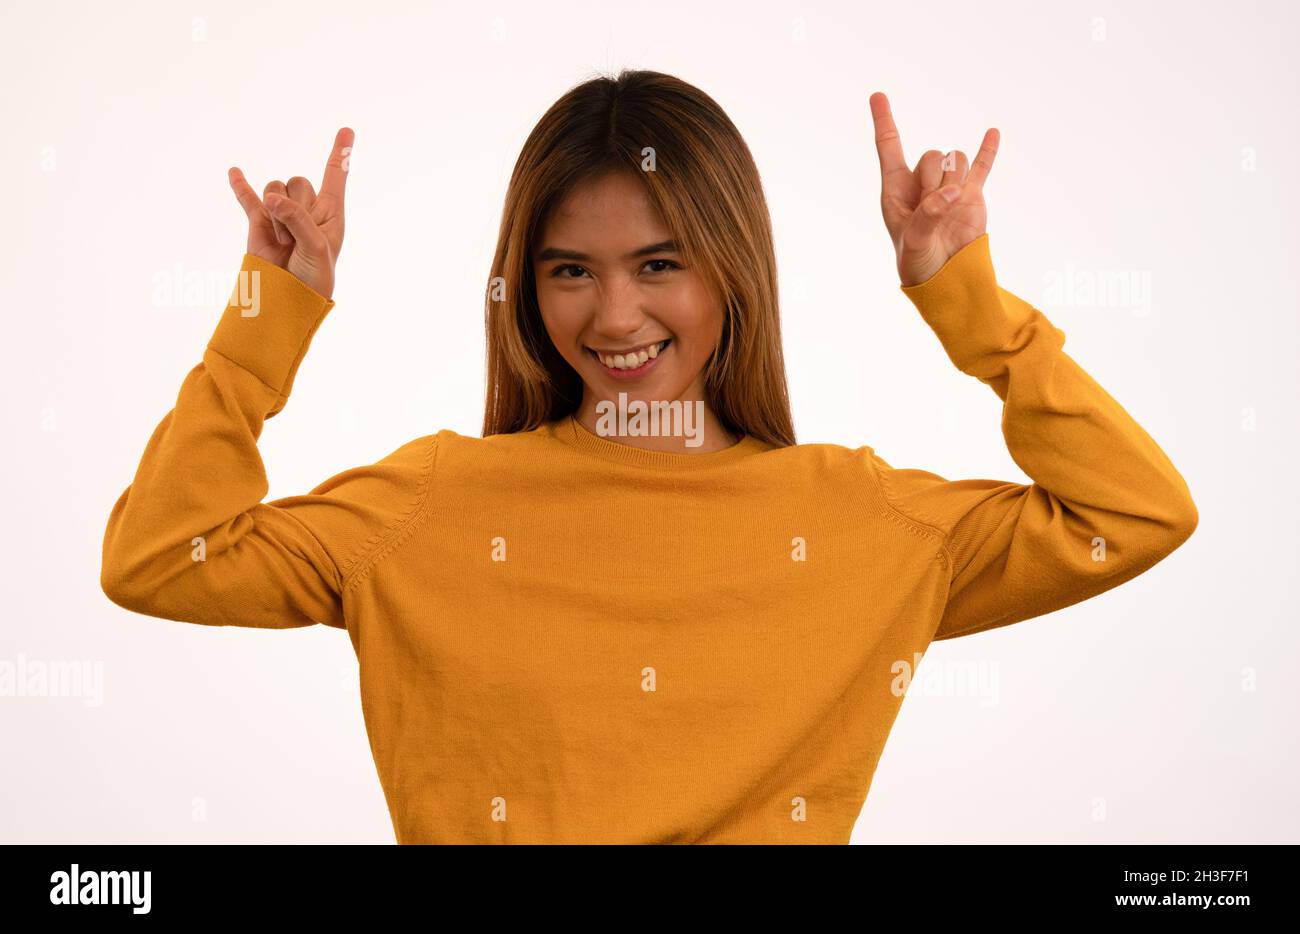 Giovane ragazza asiatica attraente sorridente con posa rock n roll in studio Foto Stock